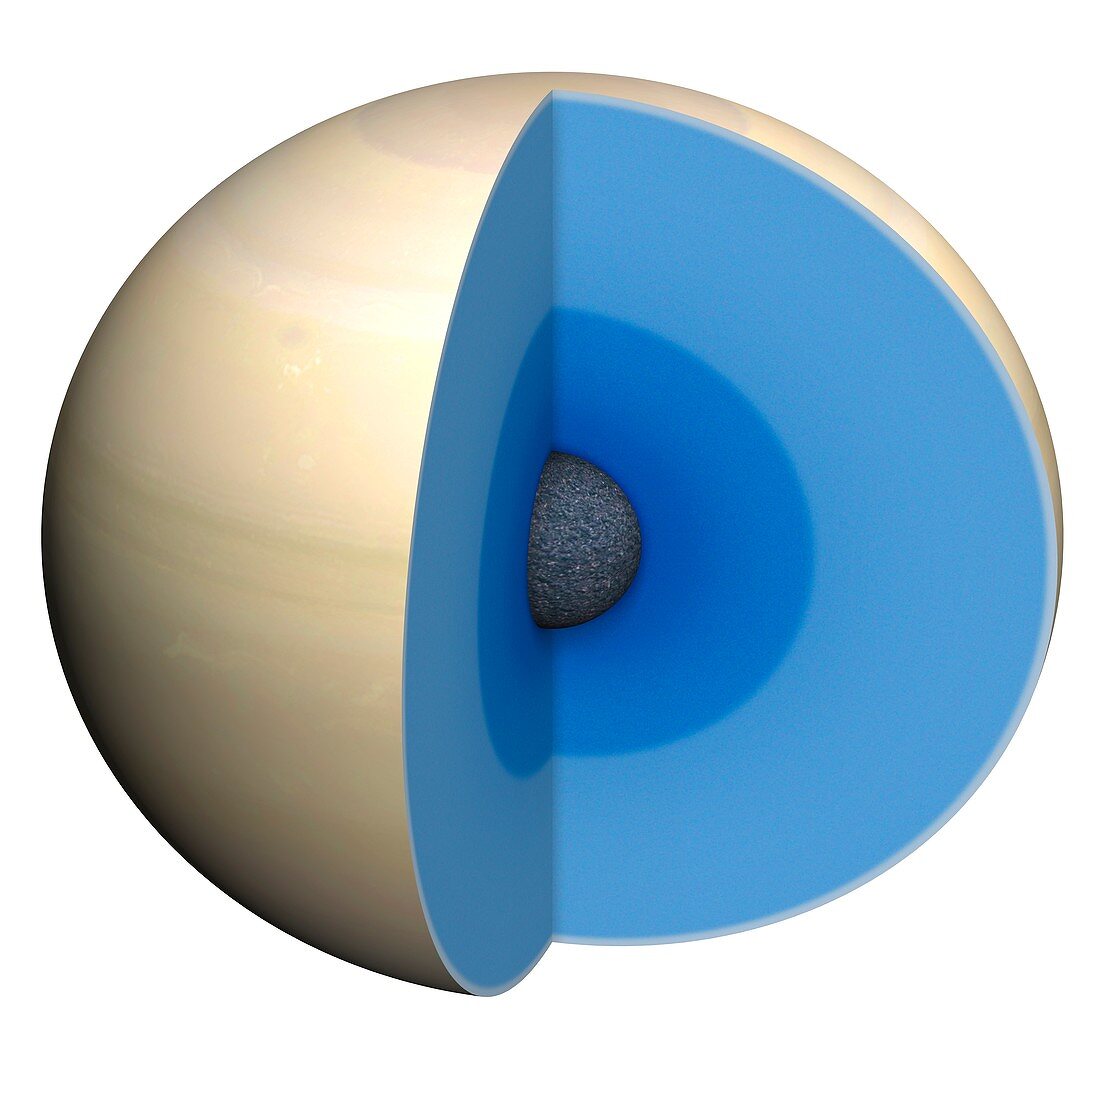 Diagram showing interior of Saturn